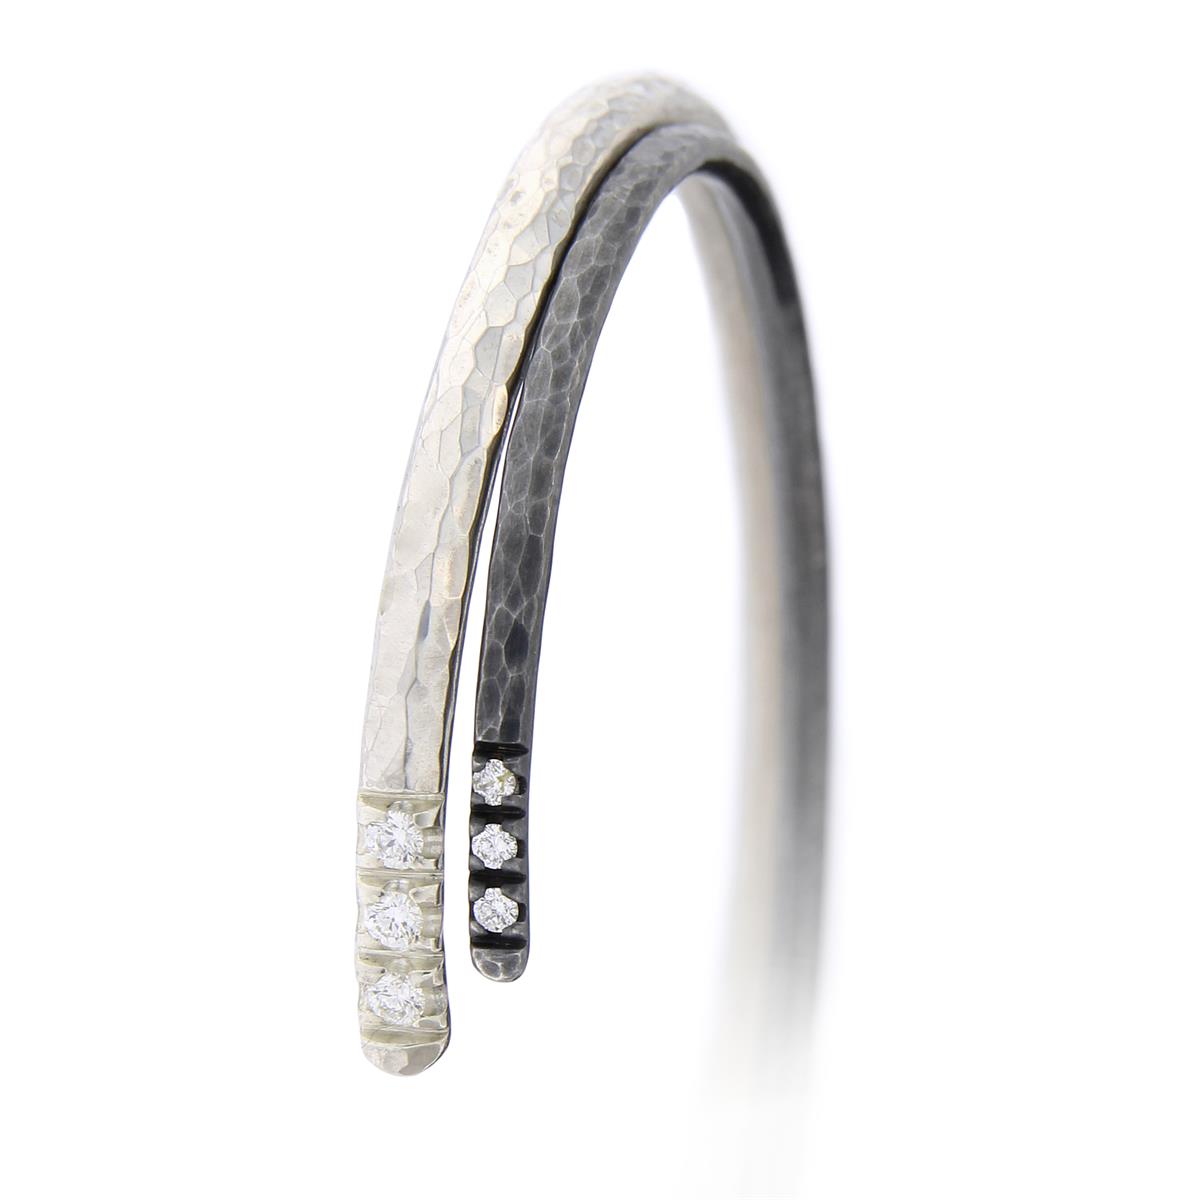 Katie g. Jewellery - Hammered Bracelet 2,0mm and 3,0mm in sterling silber mit je 3 diamanten - 2,0 um 130€ und 3,0mm um 170€ - ein Brillant extra zwischen 70-90€